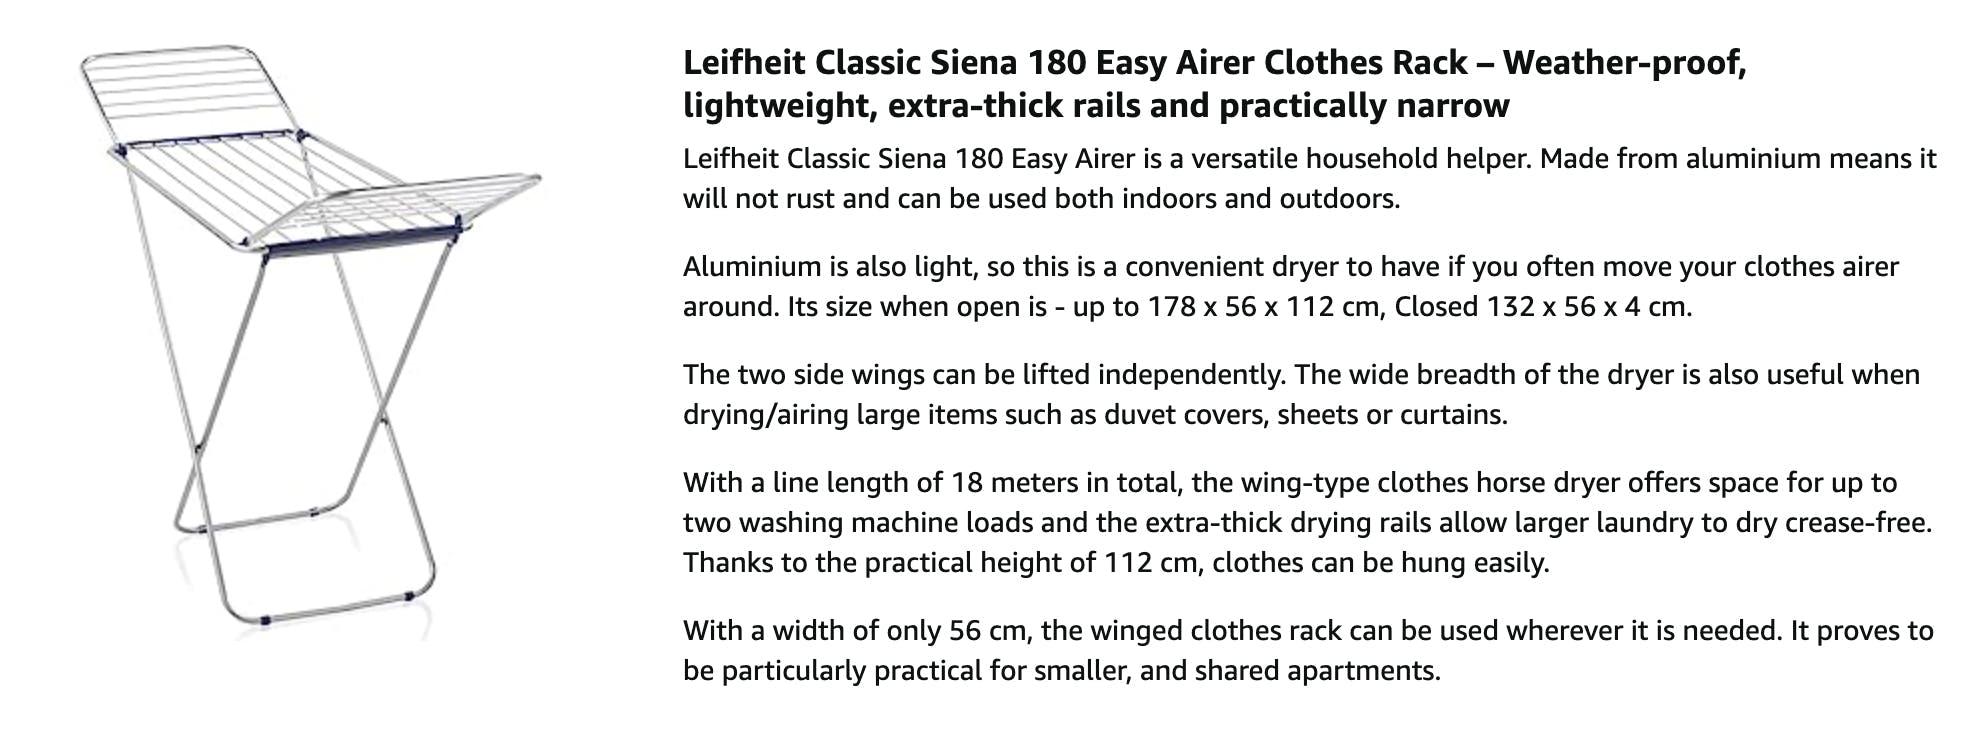 Leifheit Classic Leifheit | 180, Siena HipVan Dryer